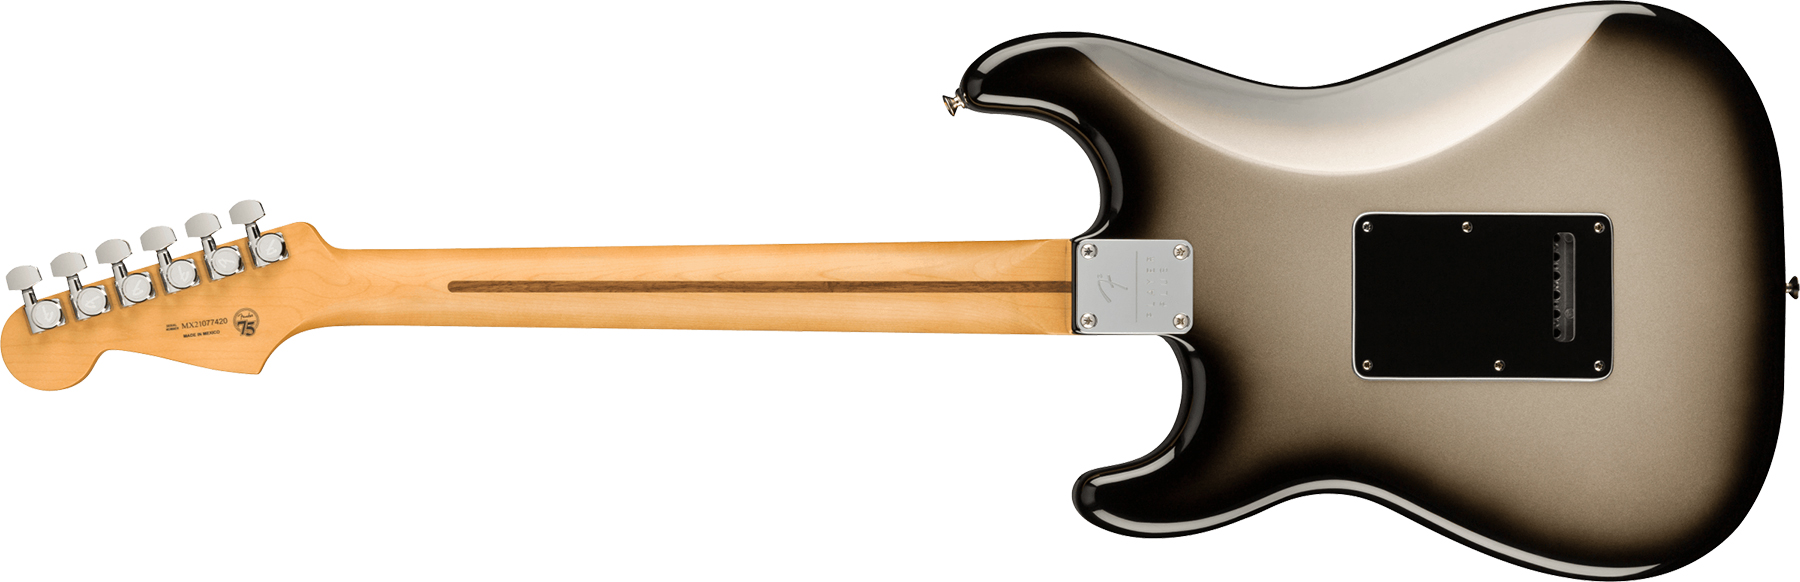 Fender Strat Player Plus Mex Hss Trem Pf - Silverburst - Elektrische gitaar in Str-vorm - Variation 1